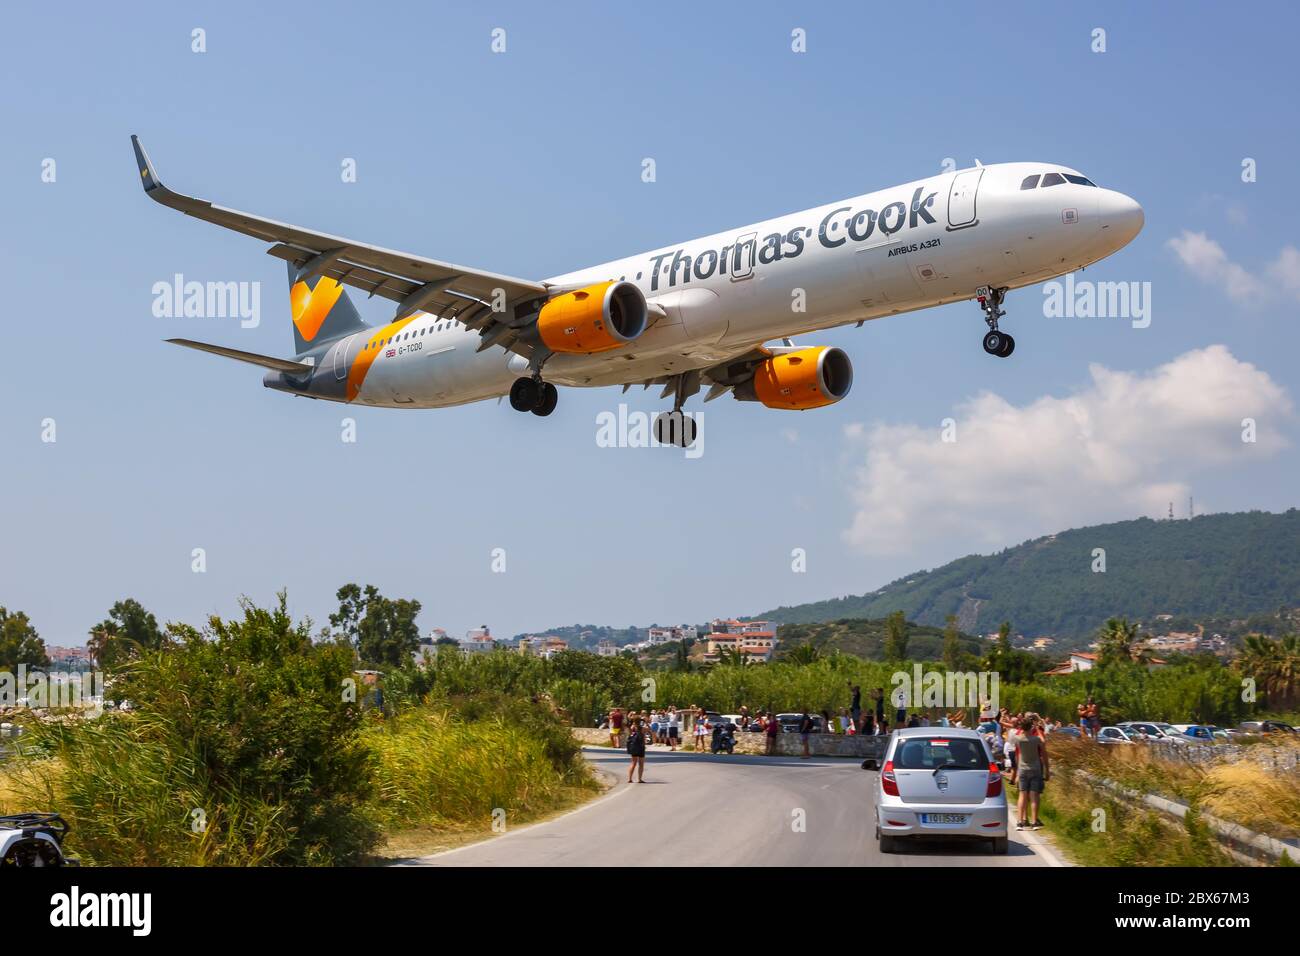 Skiathos, Griechenland - 2. August 2019: Thomas Cook Airlines Airbus A321 Flugzeug auf Skiathos Flughafen (JSI) in Griechenland. Airbus ist eine europäische Flugzeugmanufazrat Stockfoto